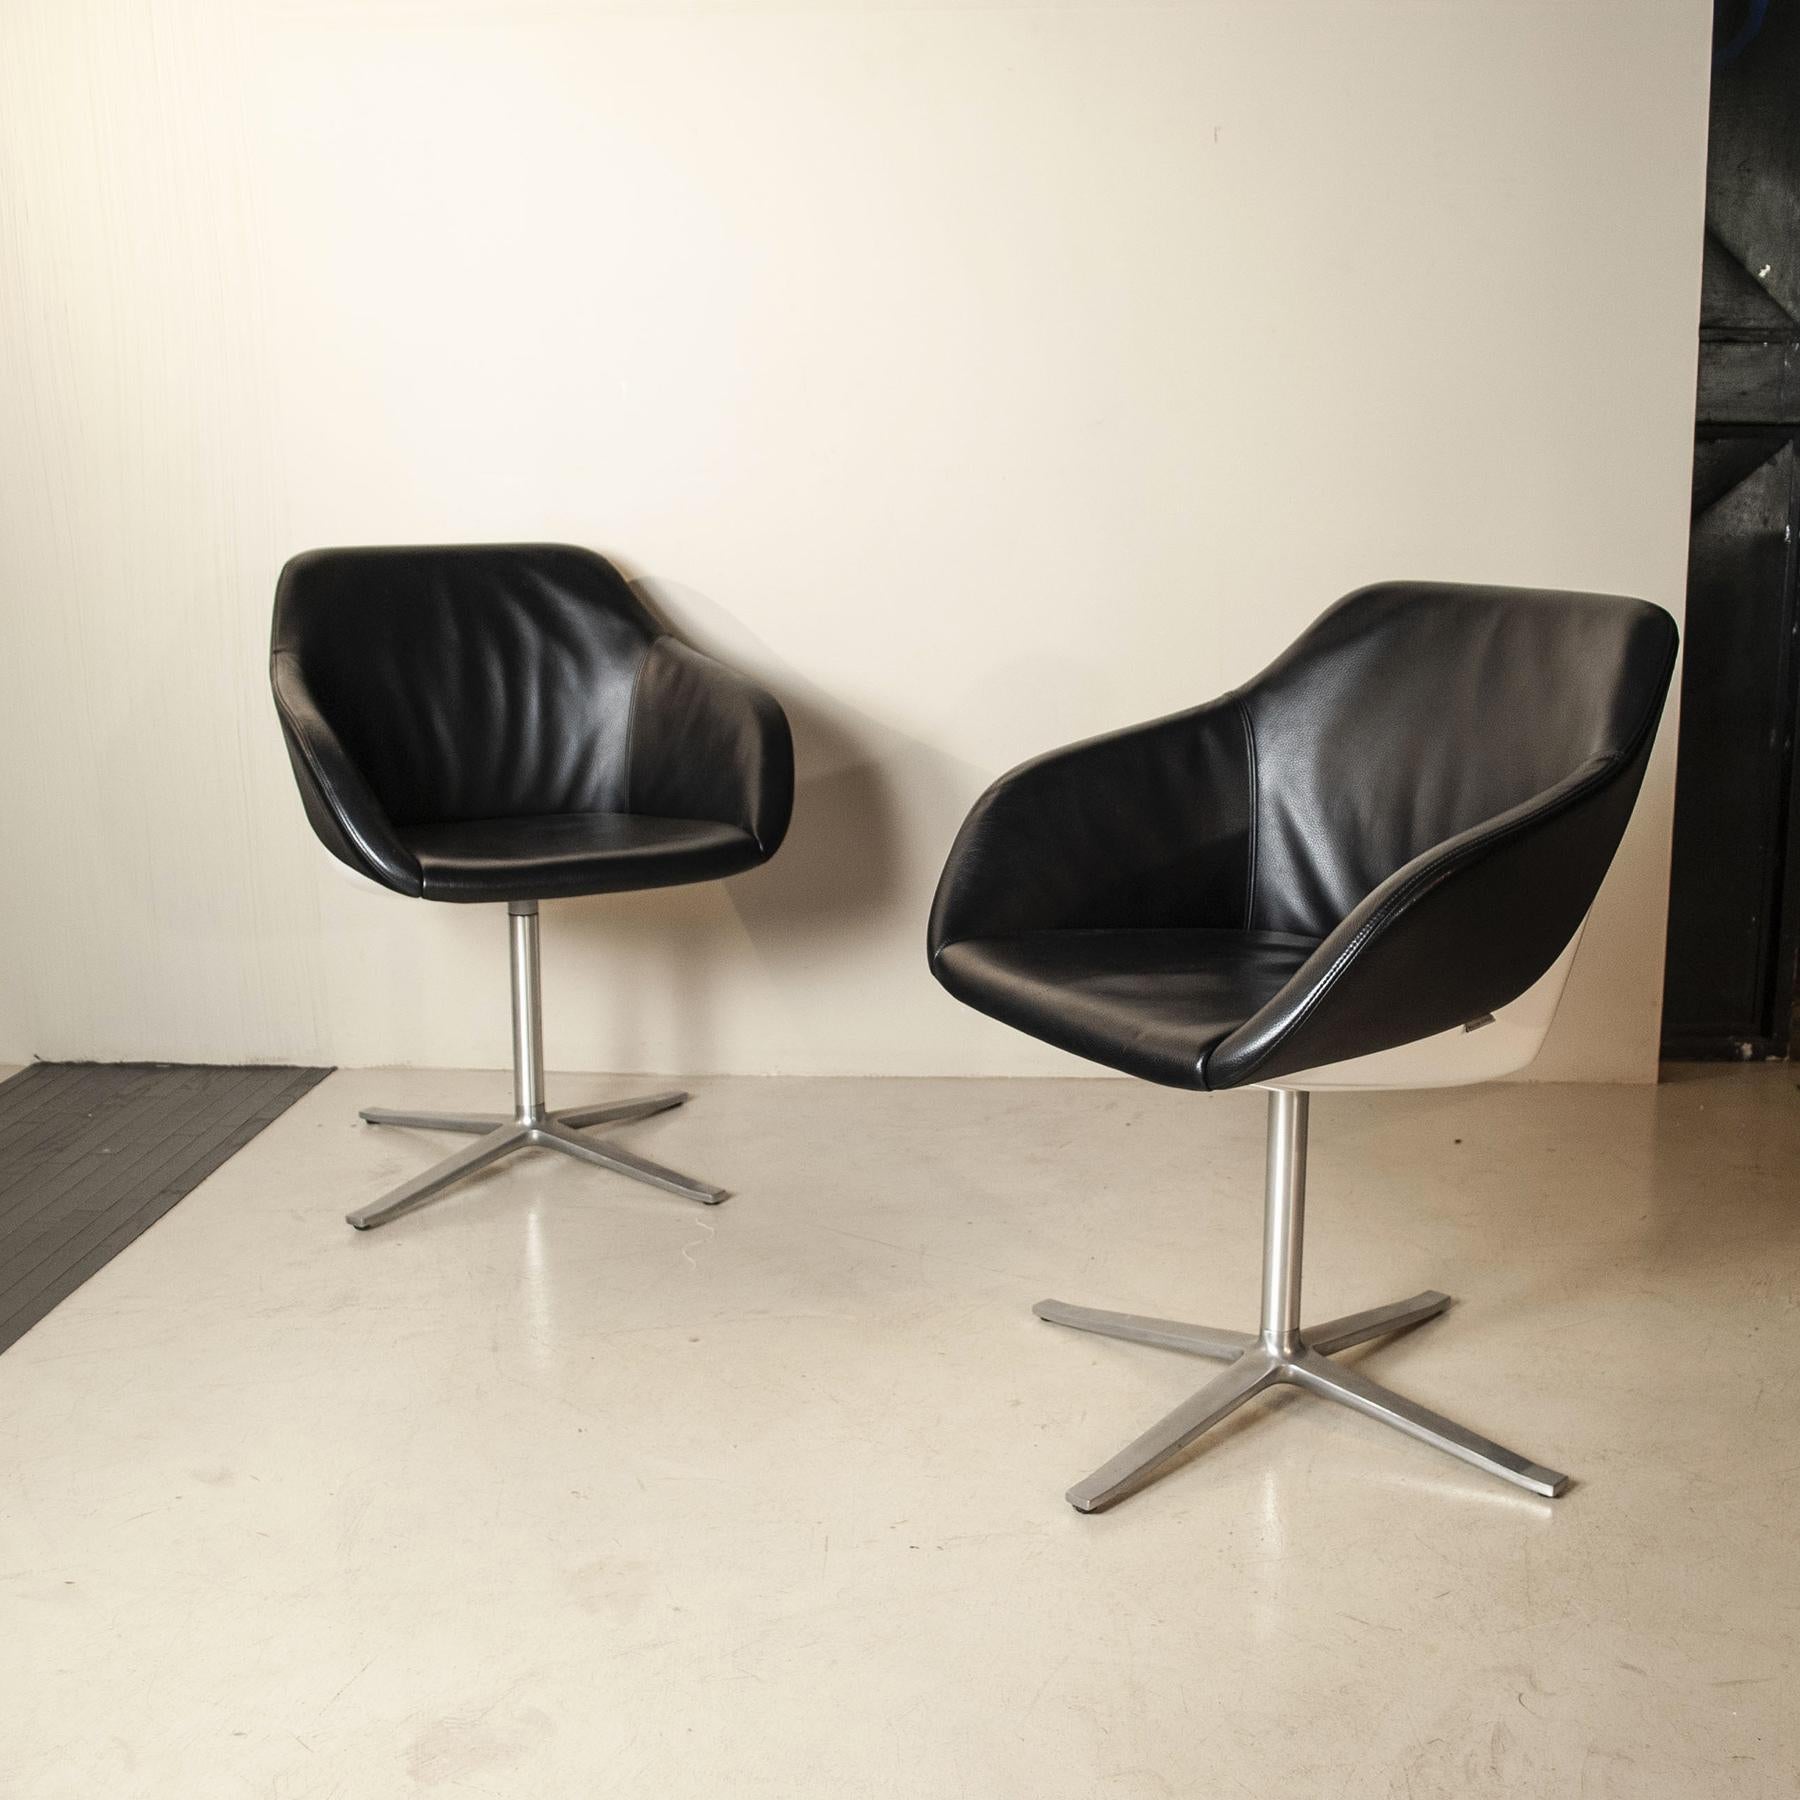 Schöne Schalenstühle des renommierten Londoner Designteams Pearson Lloyd. Der Stuhl hat außen eine sehr stabile weiße Kunststoffschale, während die Innenschale bequem gepolstert und mit echtem Leder bezogen ist.

Luke Pearson und Tom Lloyd gründeten